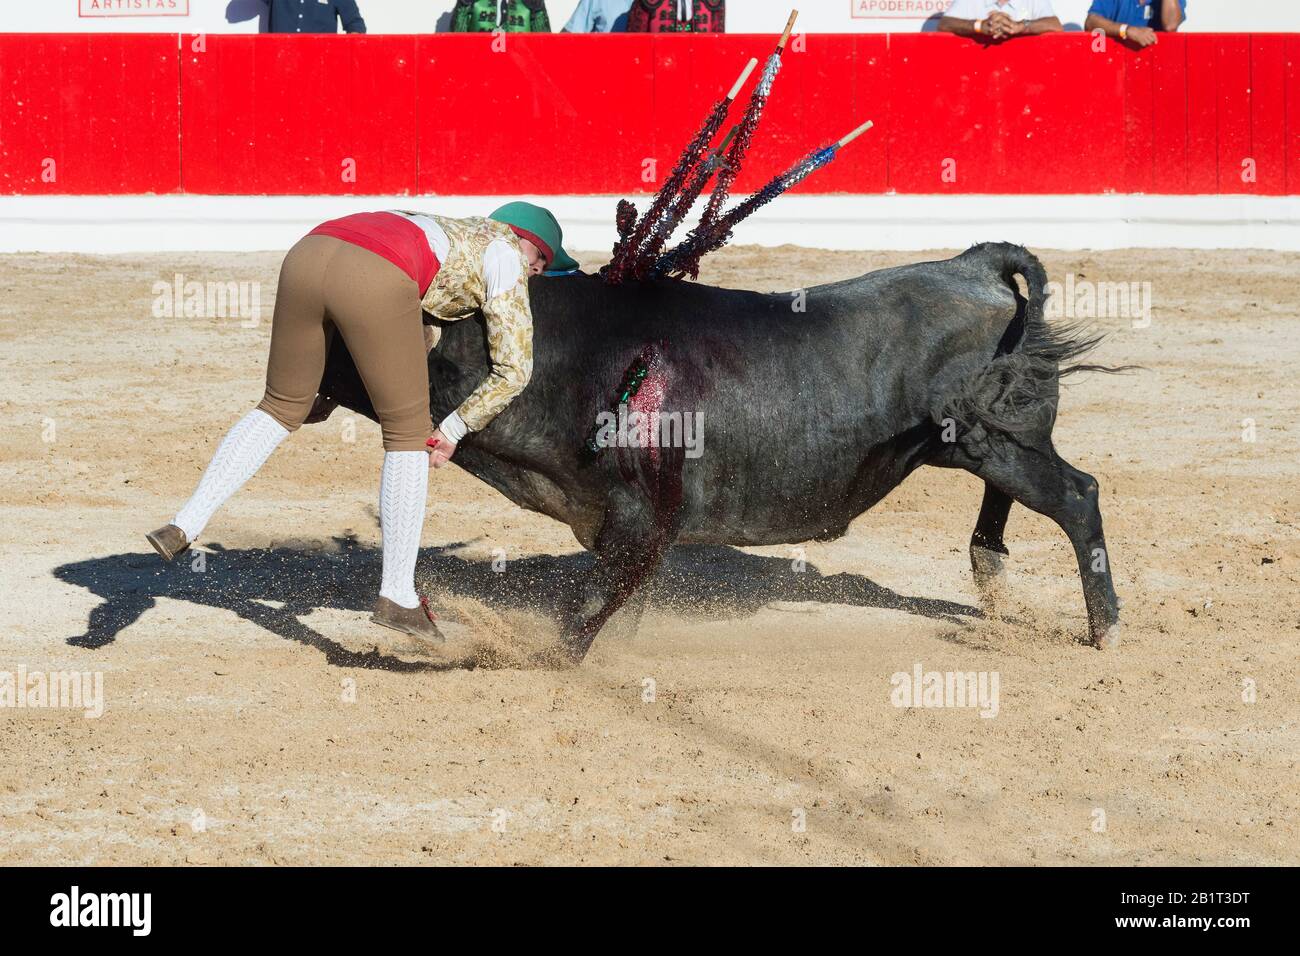 Stierkampf in Alcochete. Forcado anspruchsvolle ein Stier und versuchen, es zu stoppen, Stiere sind nicht während der stierkampf, Setúbal Alcochete, Provinz, Port getötet Stockfoto